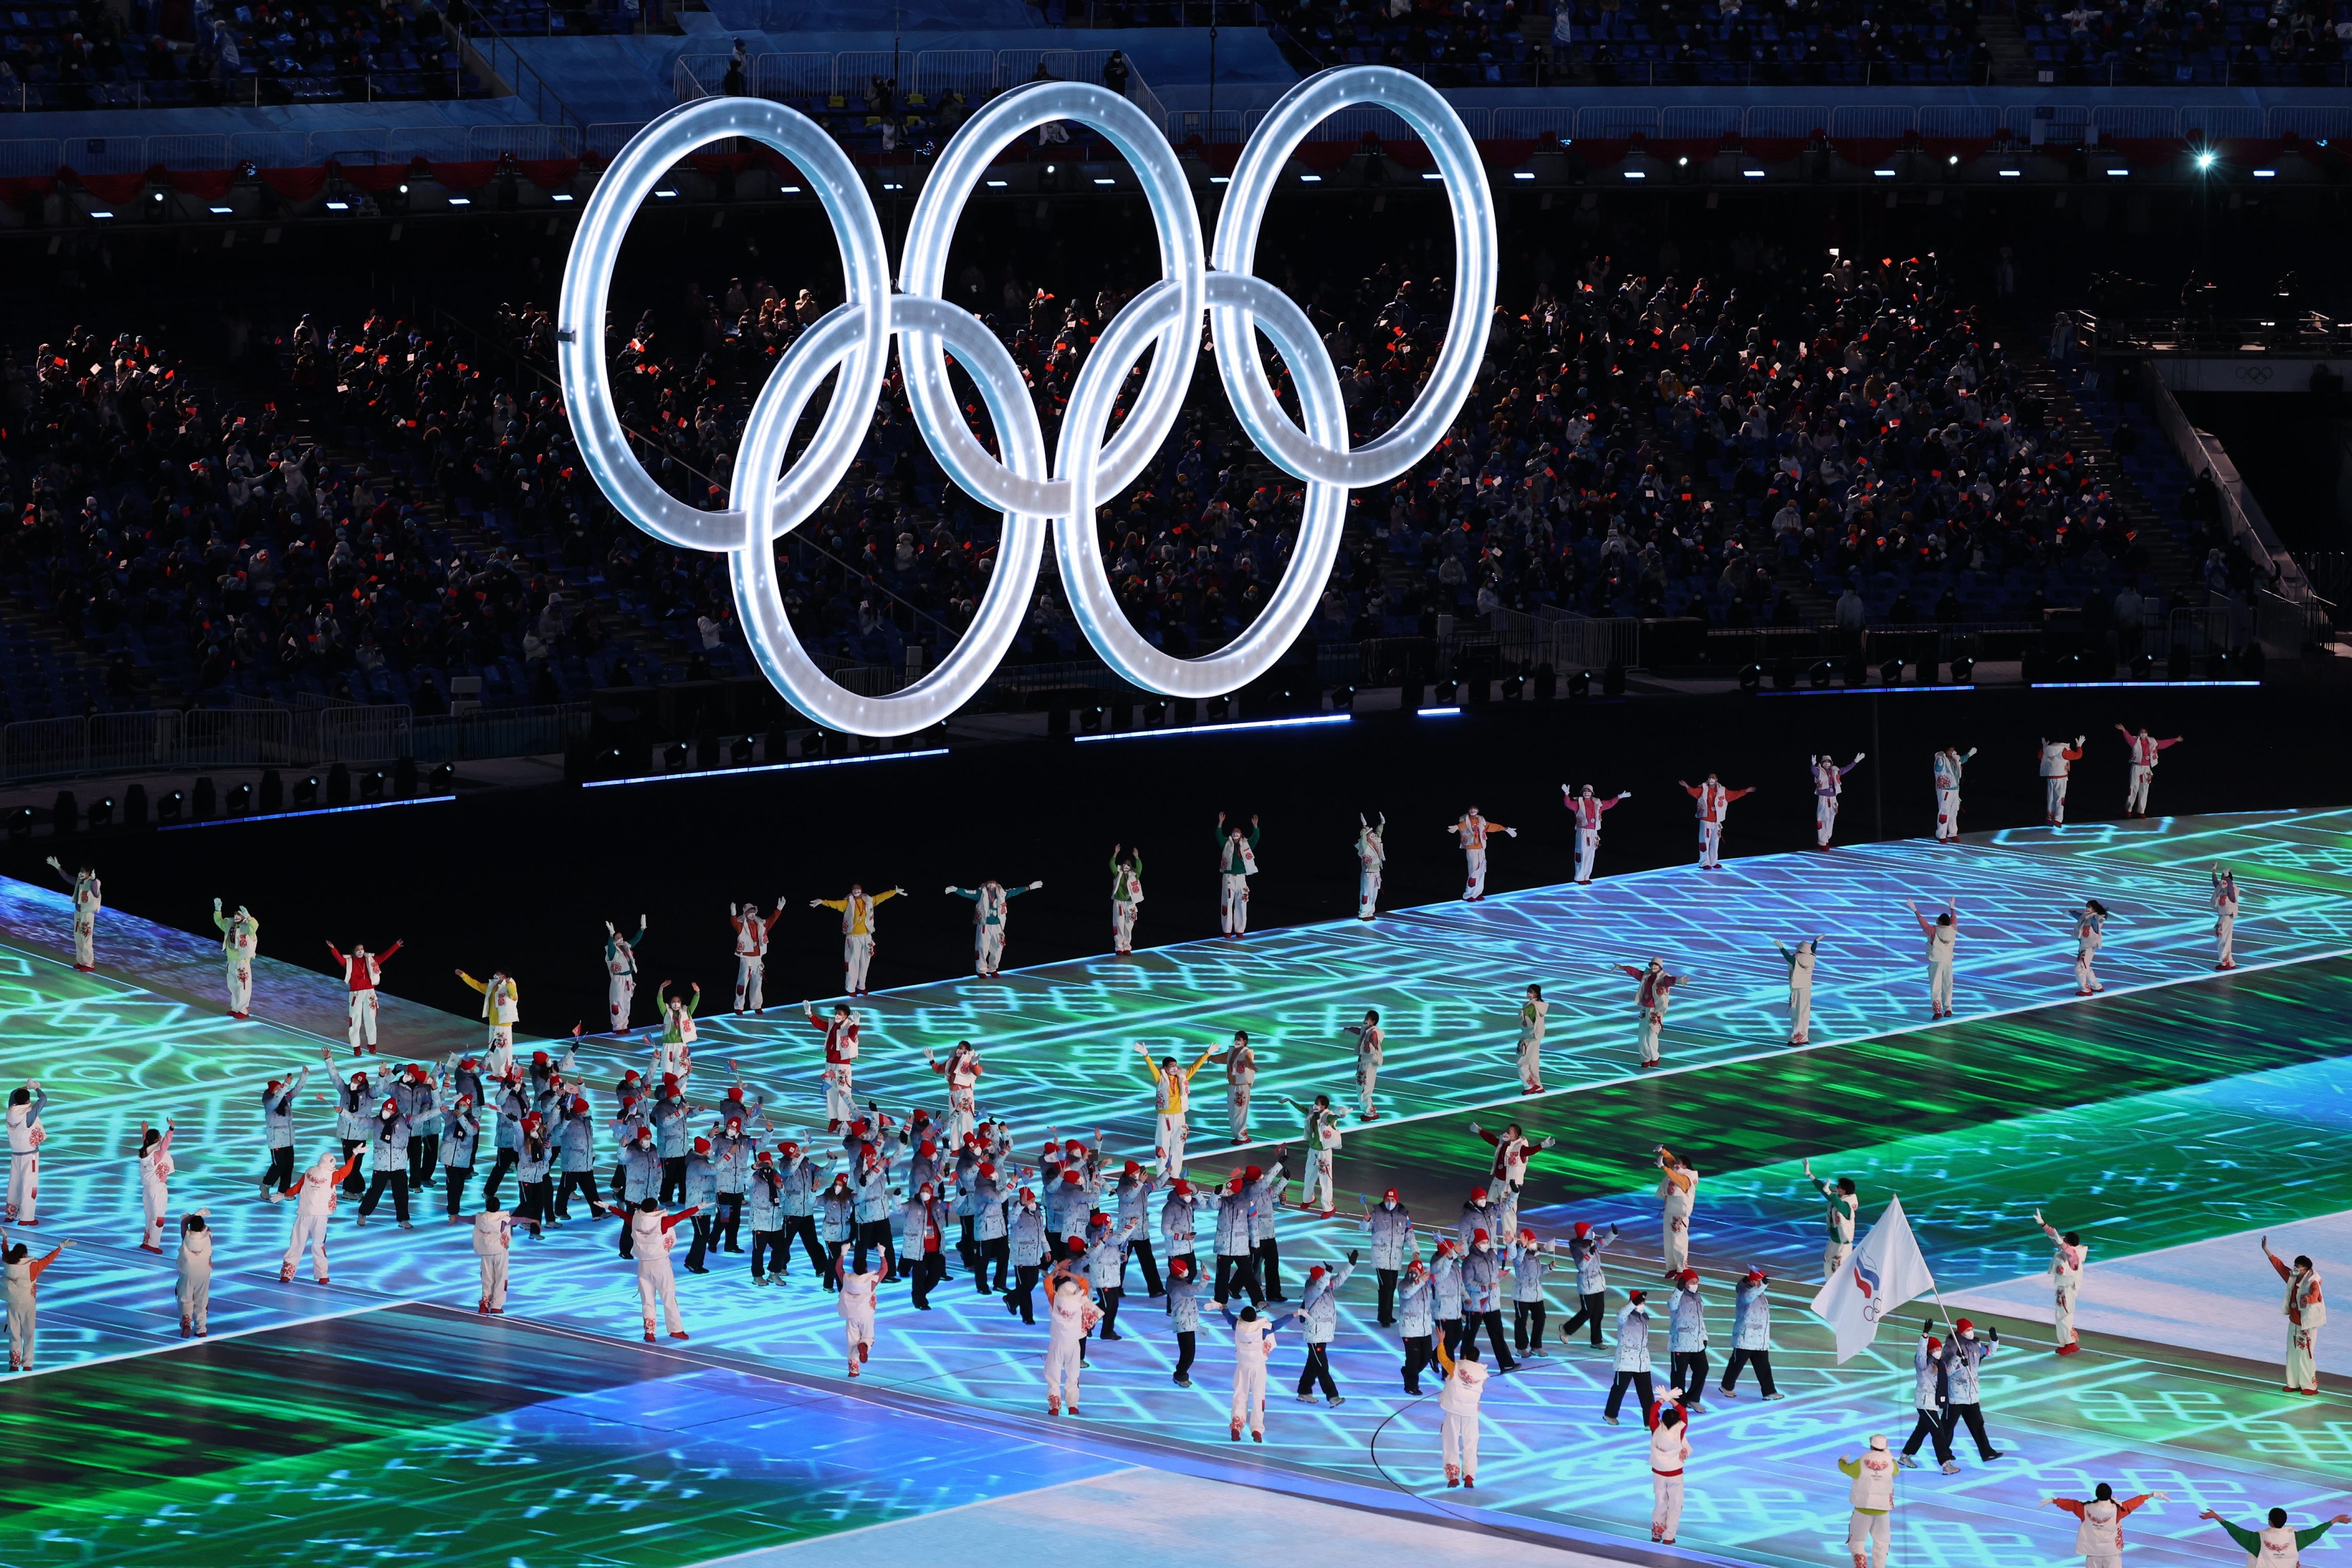 Fotos De La Ceremonia De Apertura De Los Juegos Olímpicos De Invierno De Pekín 2022 3544